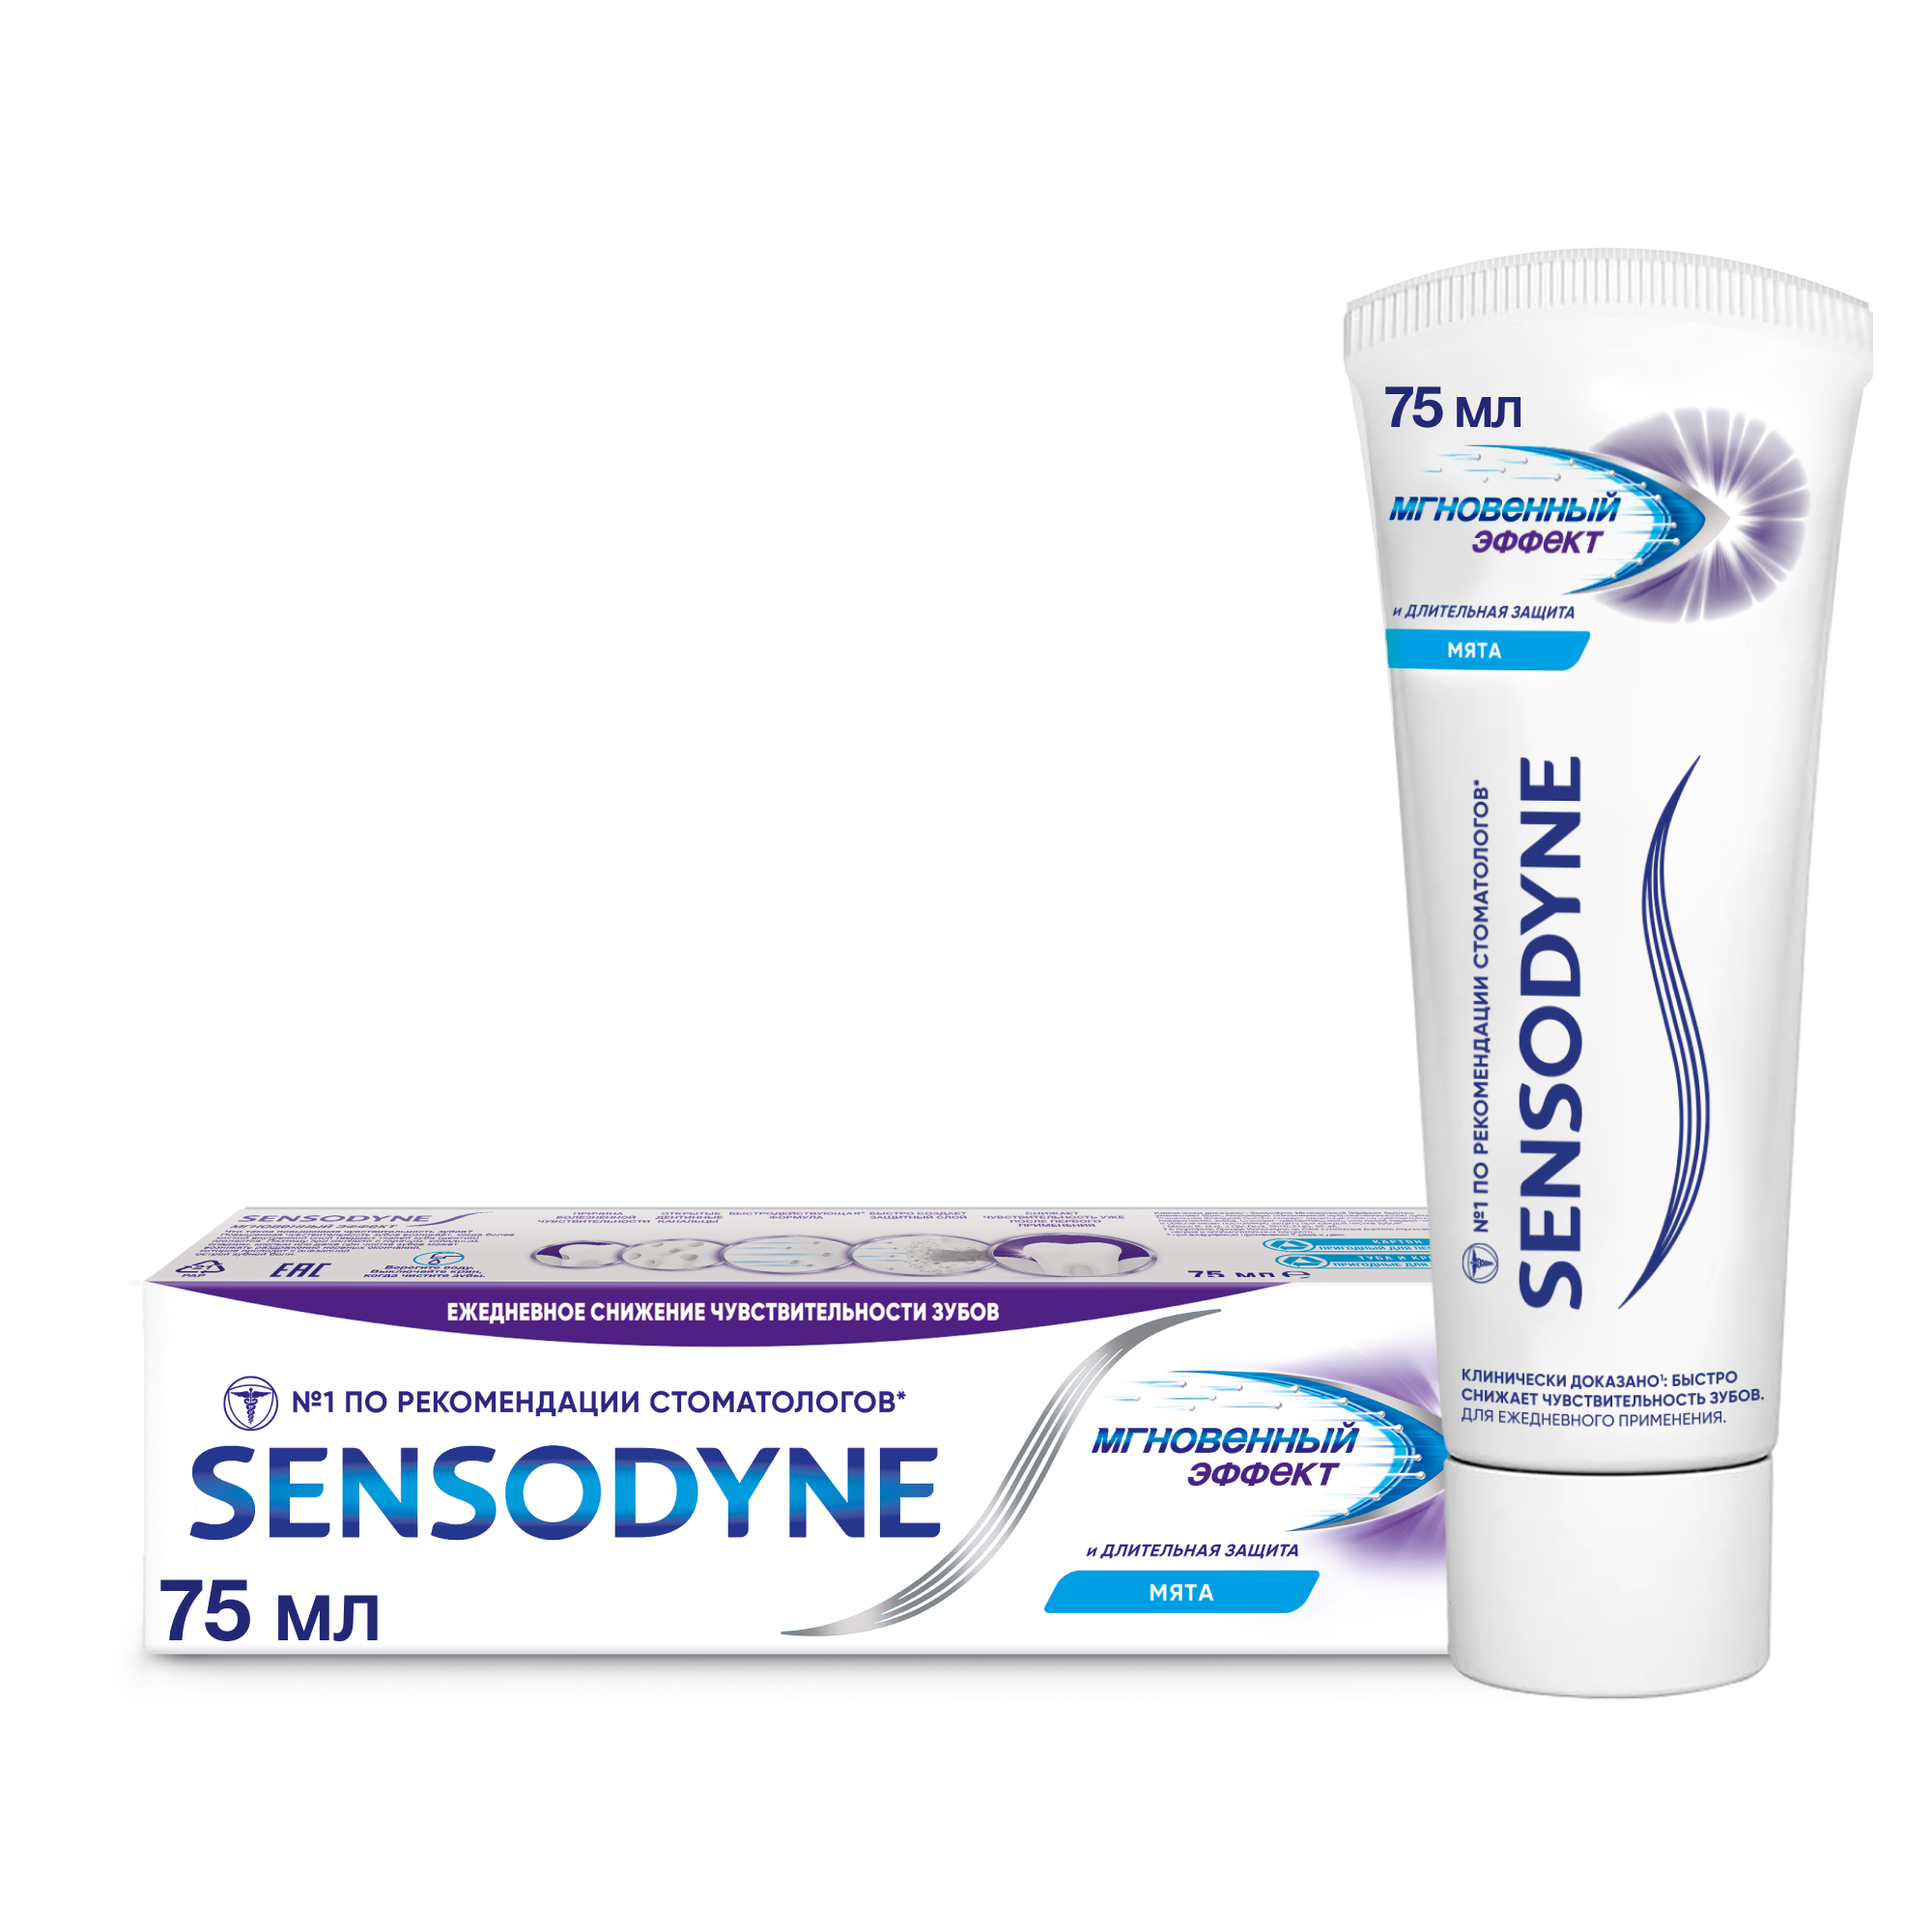 Зубная паста Sensodyne Мгновенный Эффект для чувствительных зубов с фтором, 75 мл зубная паста sensodyne глубокое очищение для чувствительных зубов с фтором 75 мл